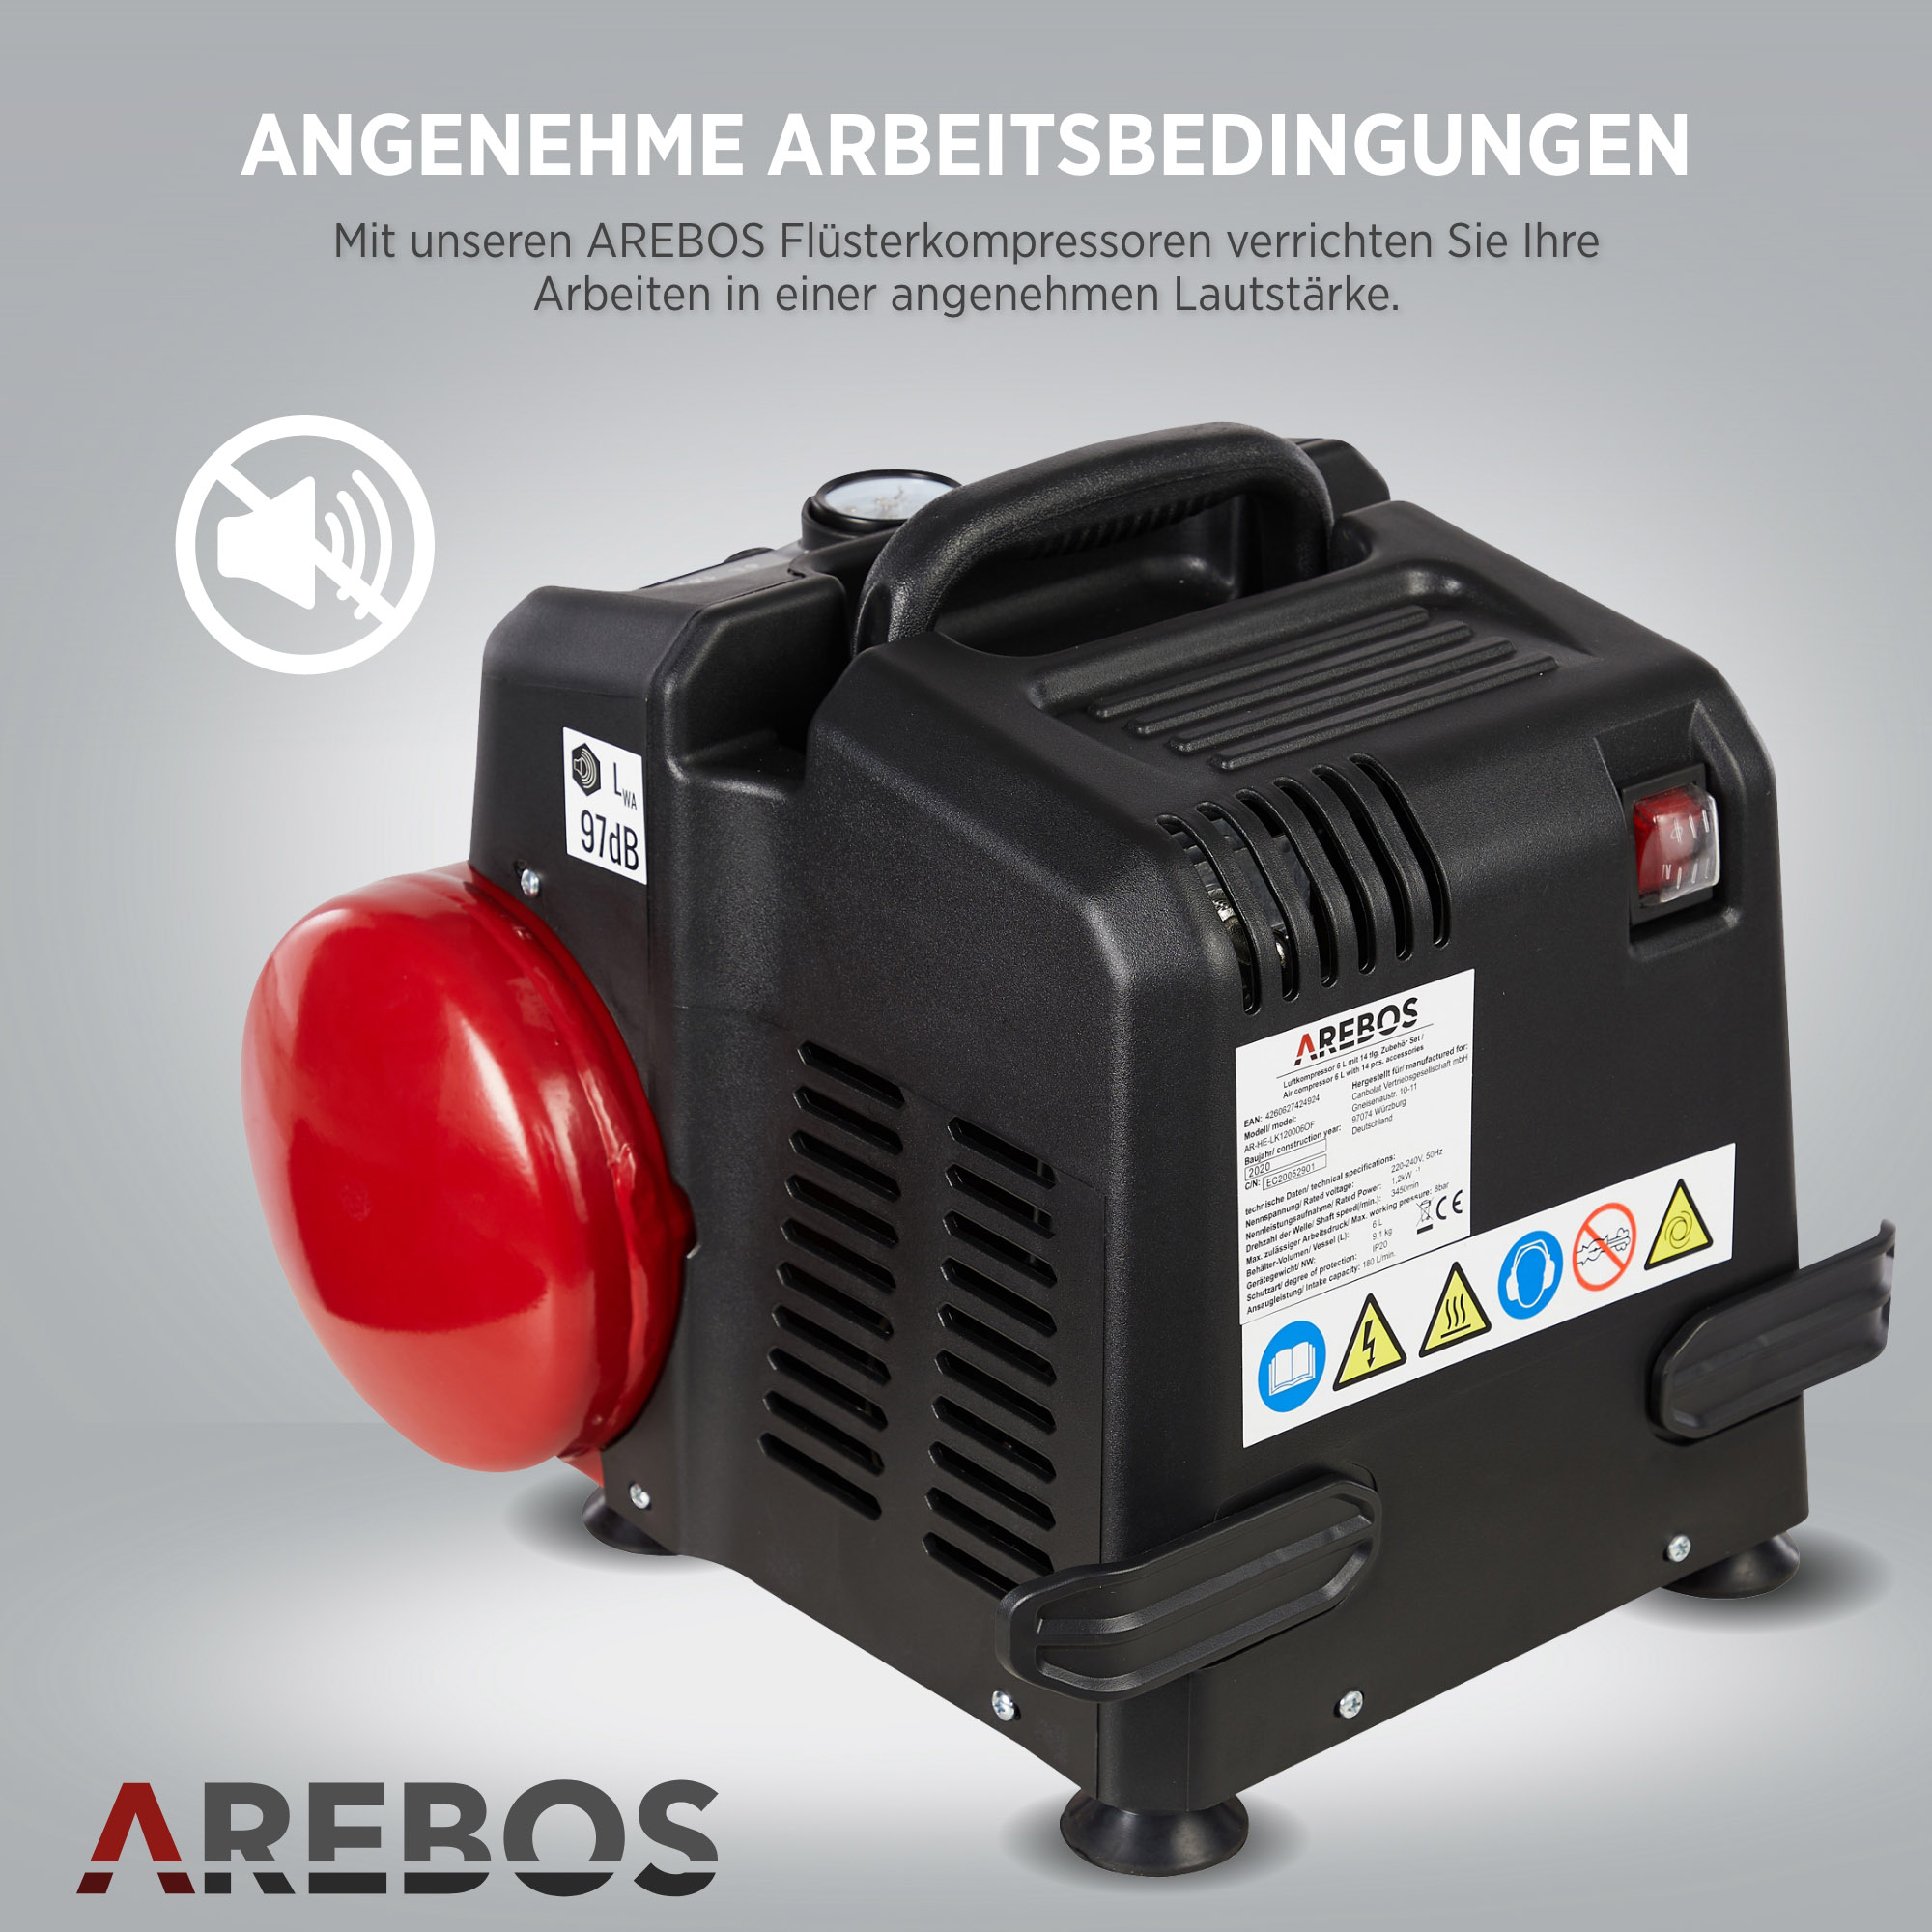 AREBOS inkl. 13-tlg. Druckluft-Werkzeug-Set langer Luftkompressor, Extra | Rot ölfrei Abschaltautomatik | Luftschlauch 